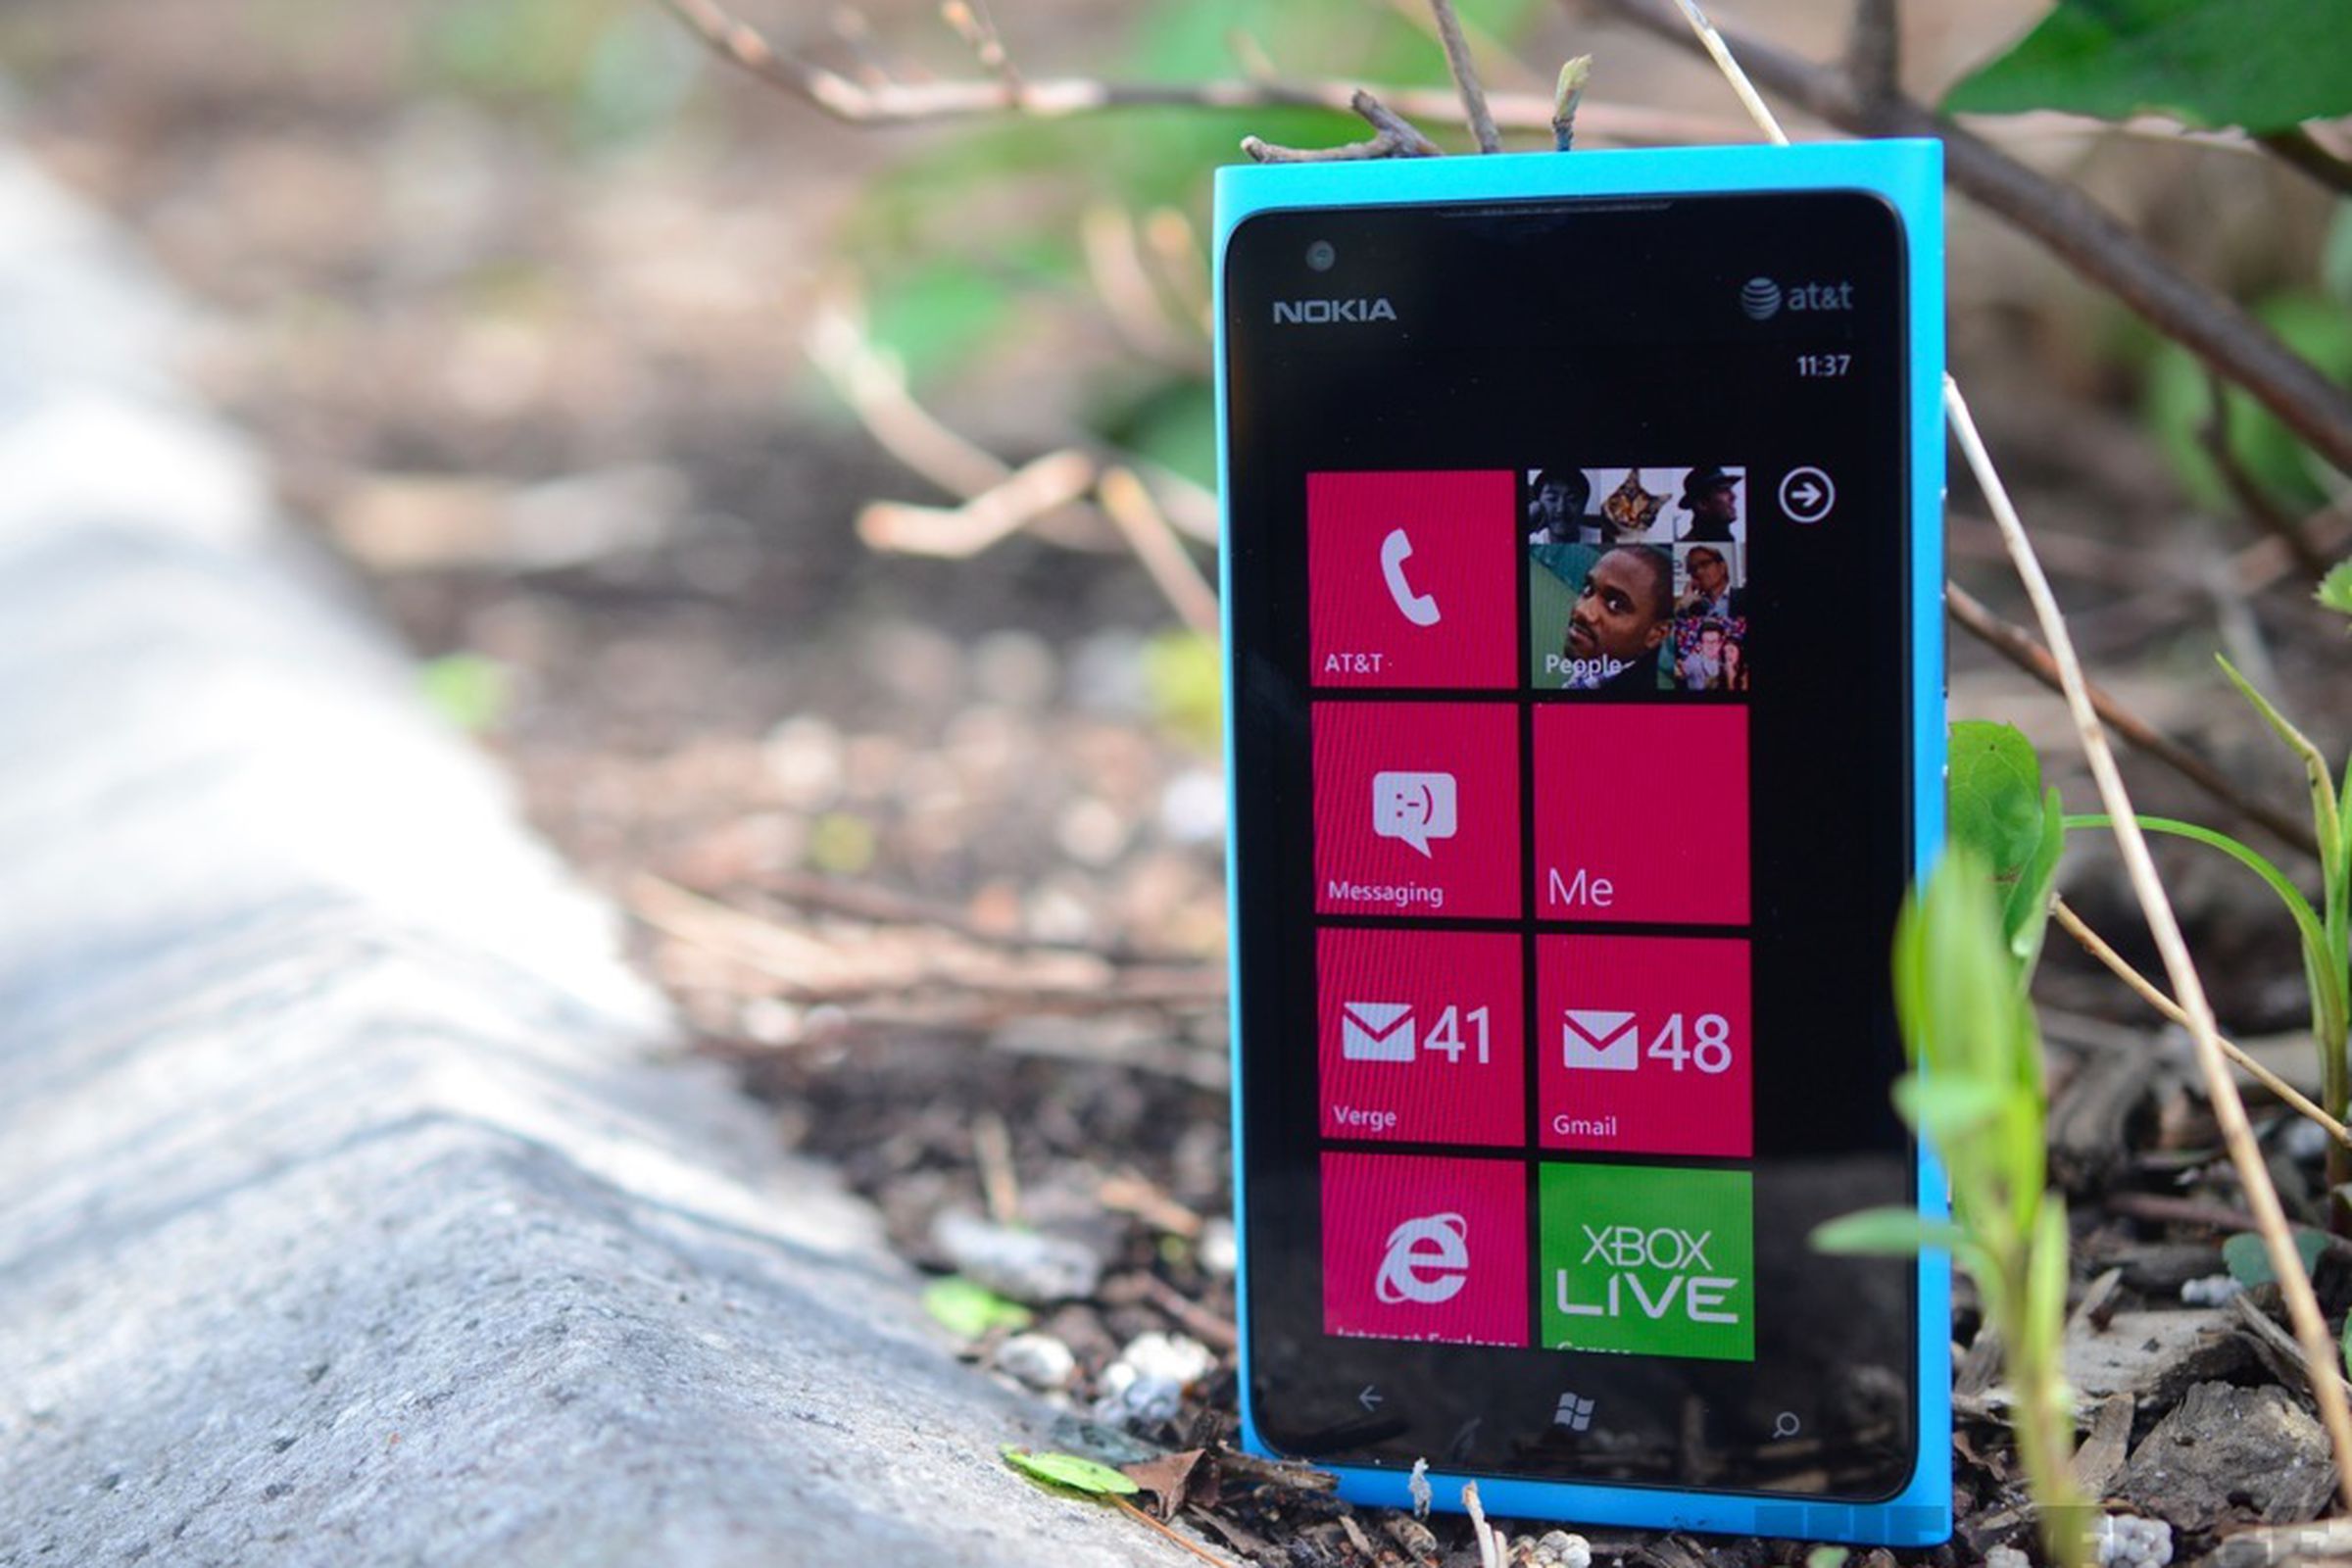 Nokia Lumia 900 hero (1024px)